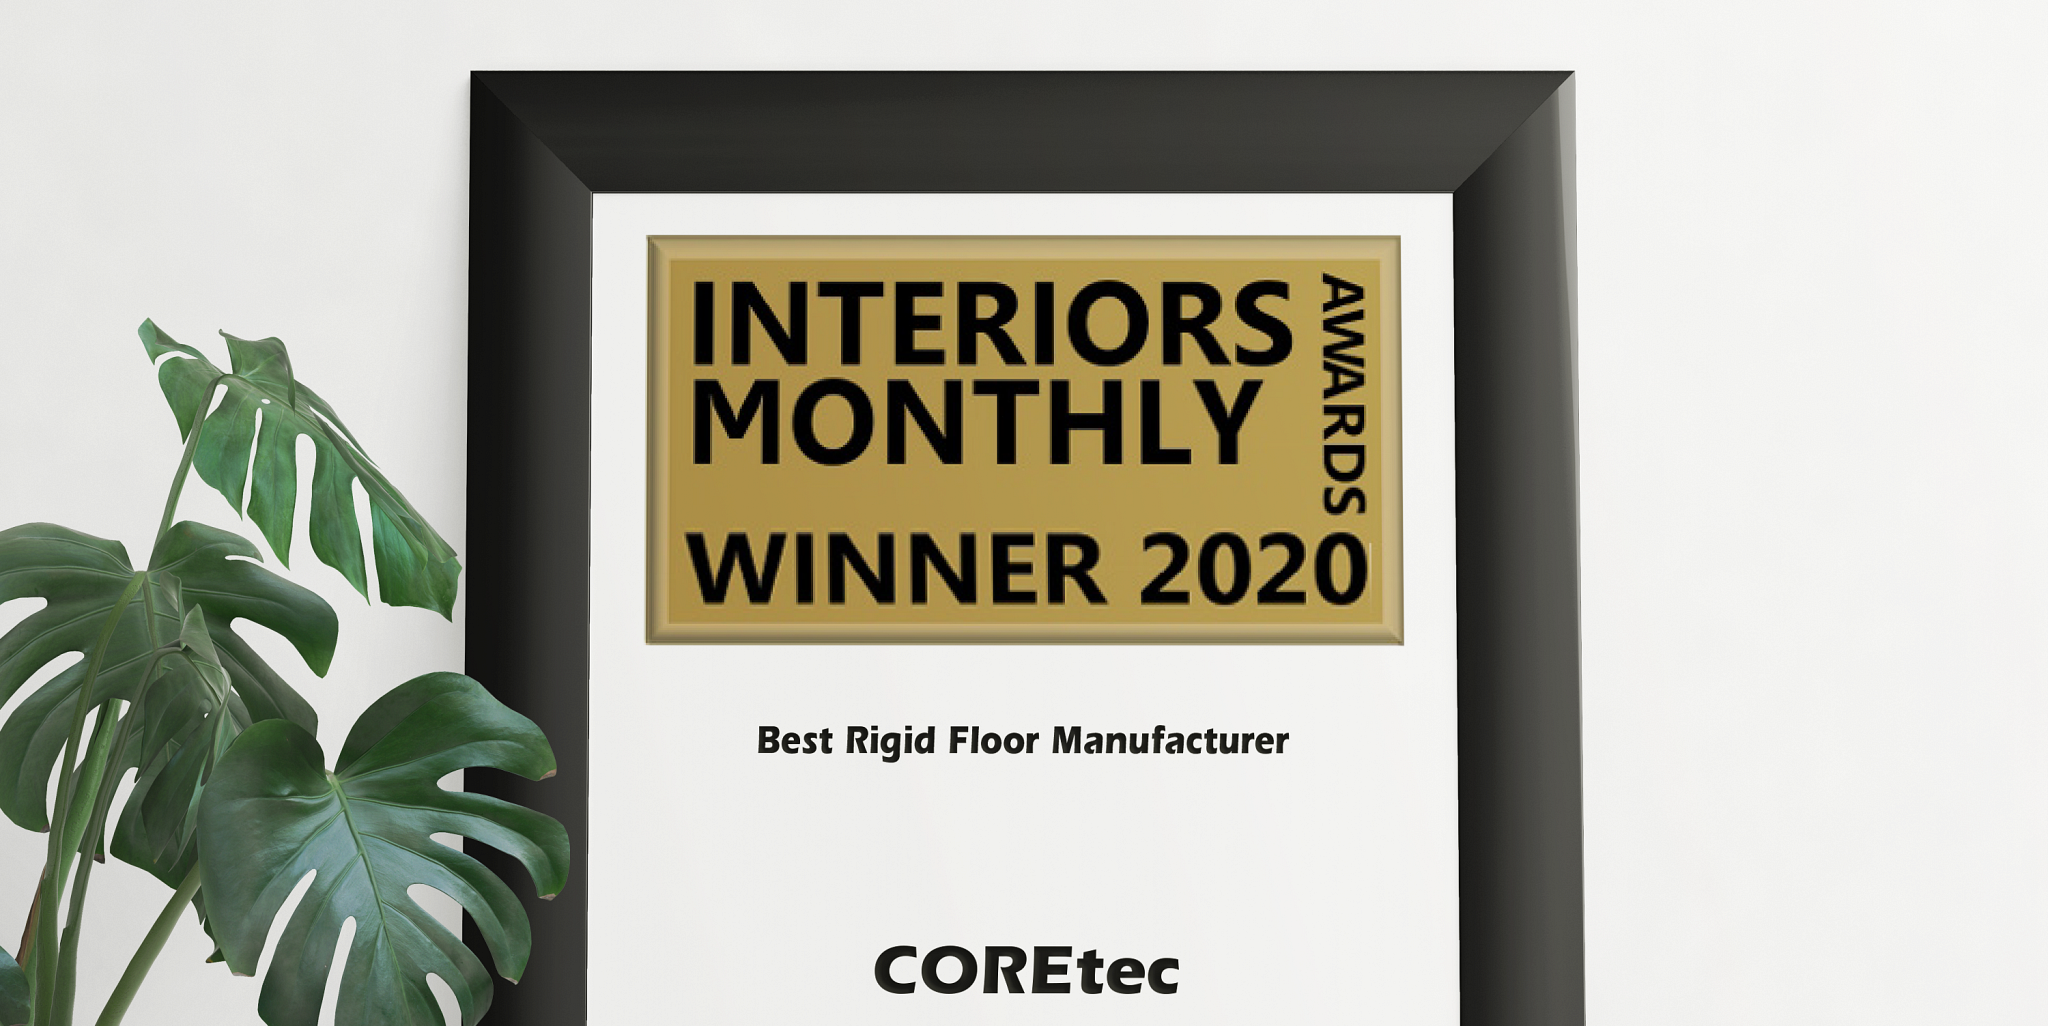 Vol trots kunnen we u melden dat we bekroond zijn met de Interiors Monthly Award in de categorie ‘Beste fabrikant van harde vloeren’!